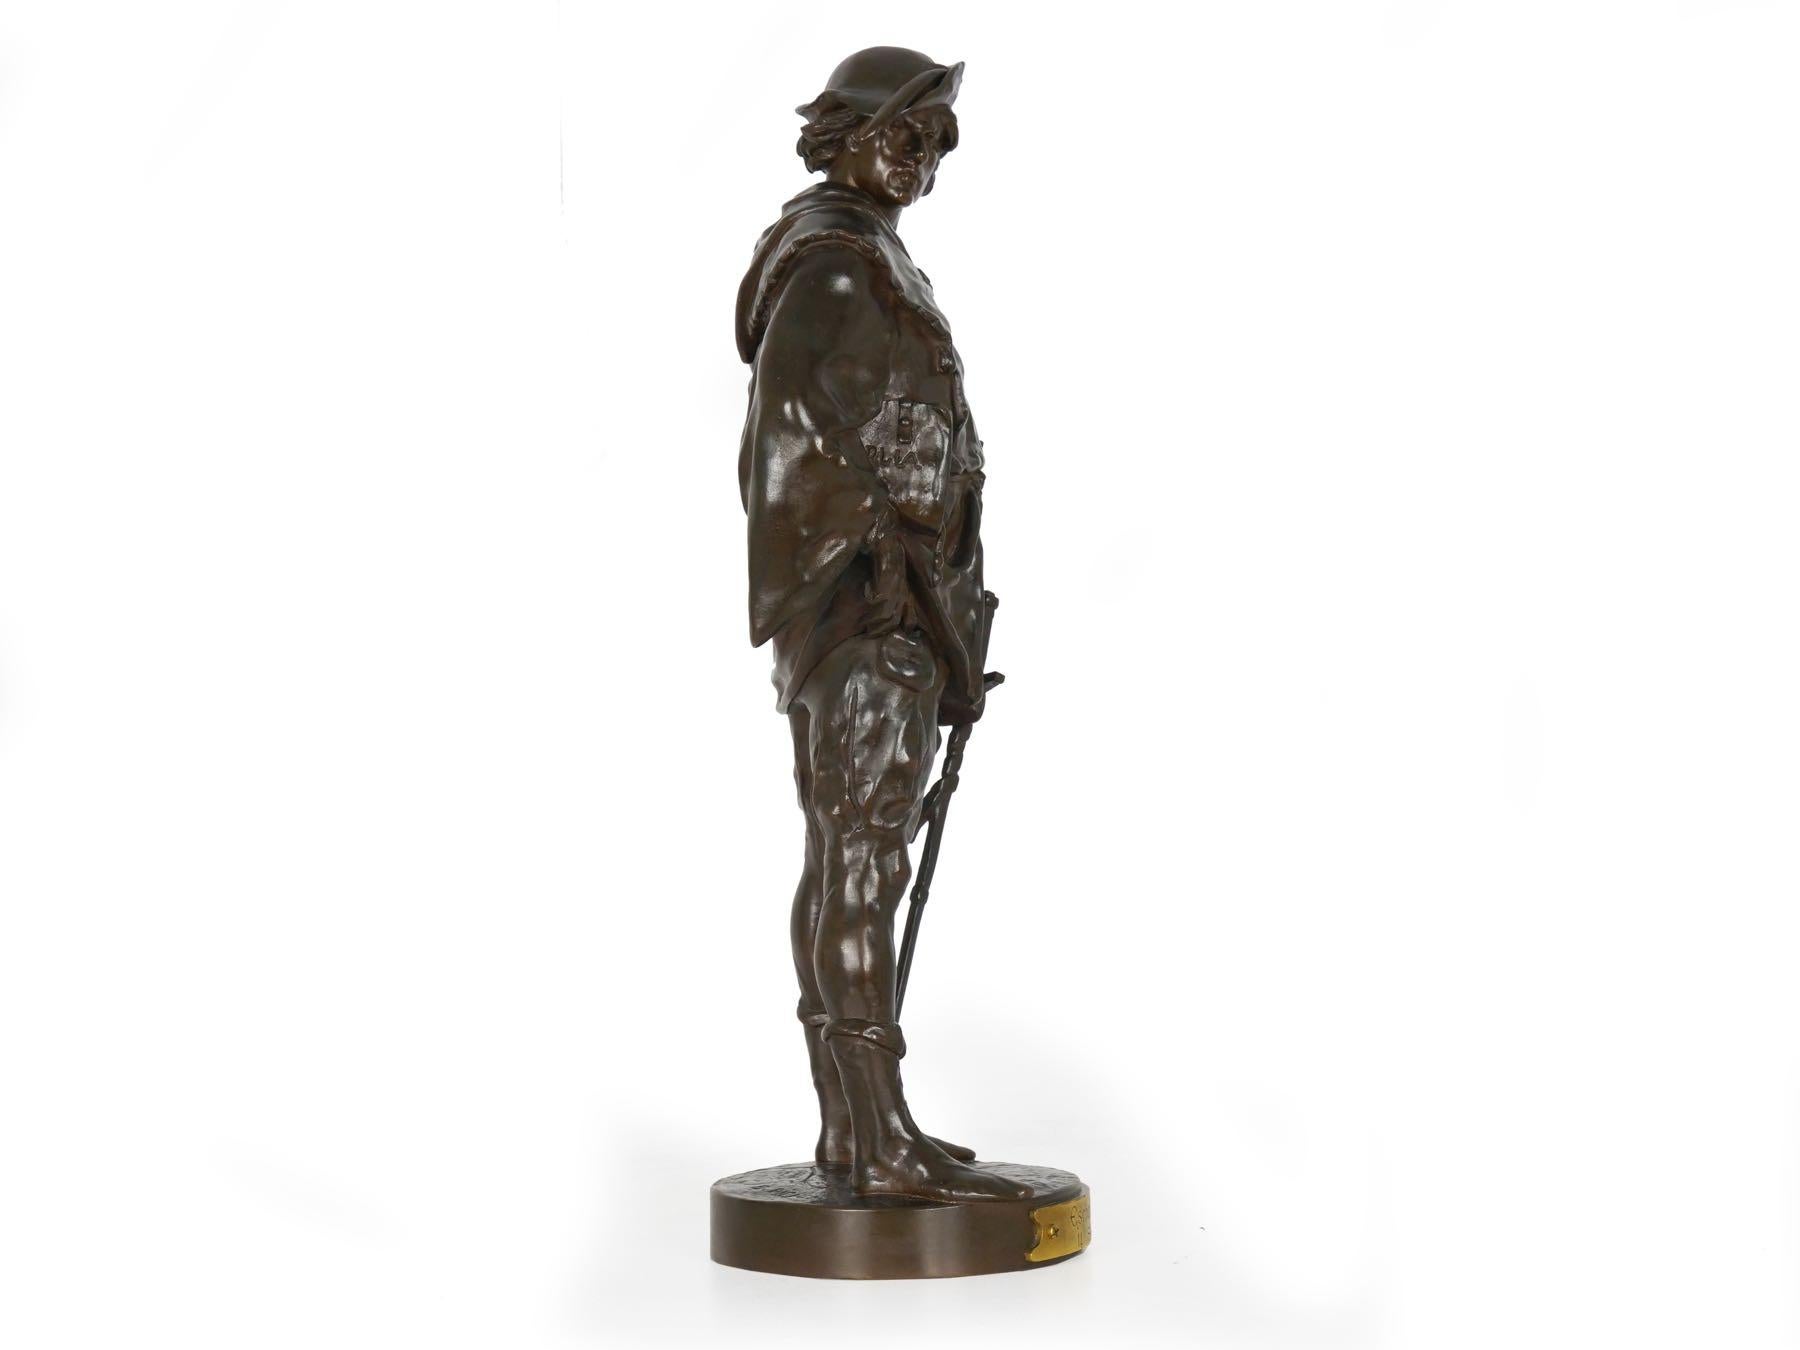 20th Century “Escholier, 14th Siècle” Antique French Bronze Sculpture by Emile Picault